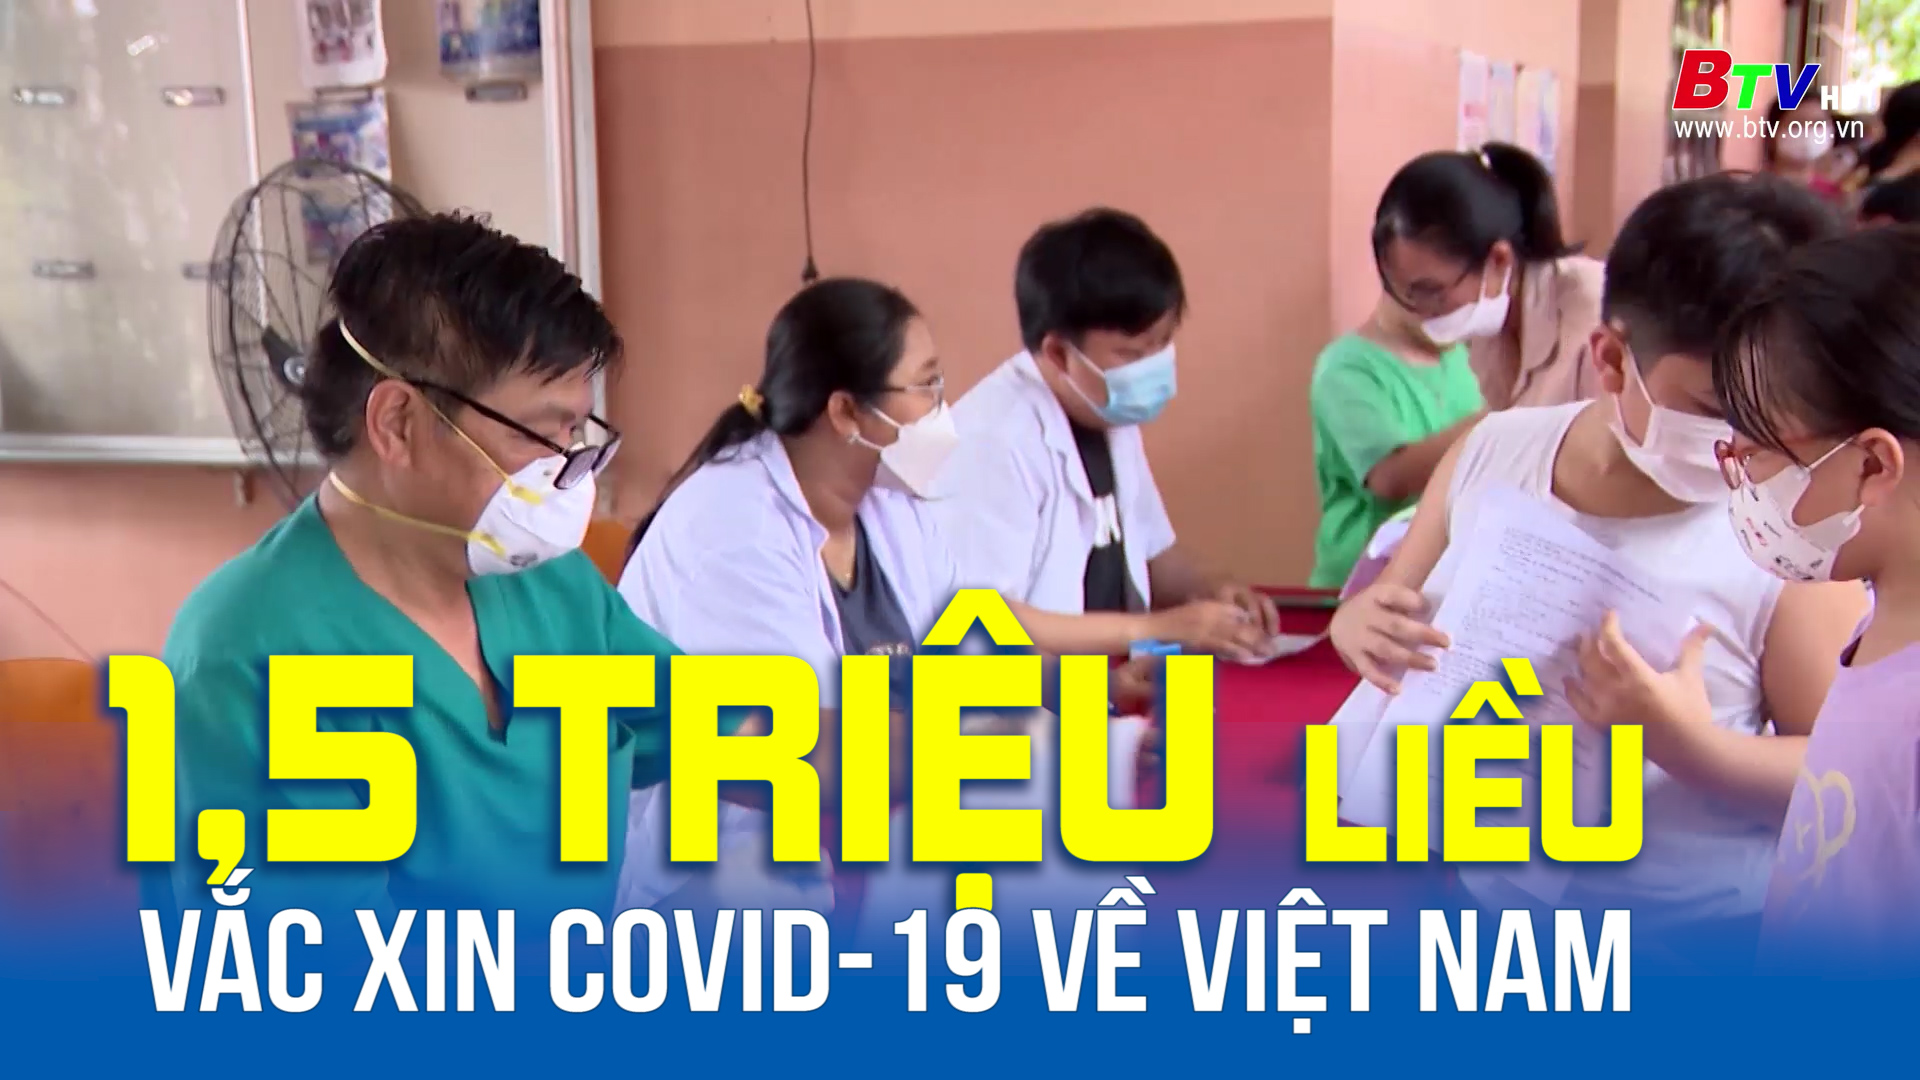 Thêm 1,5 triệu liều vắc xin Covid-19 về Việt Nam